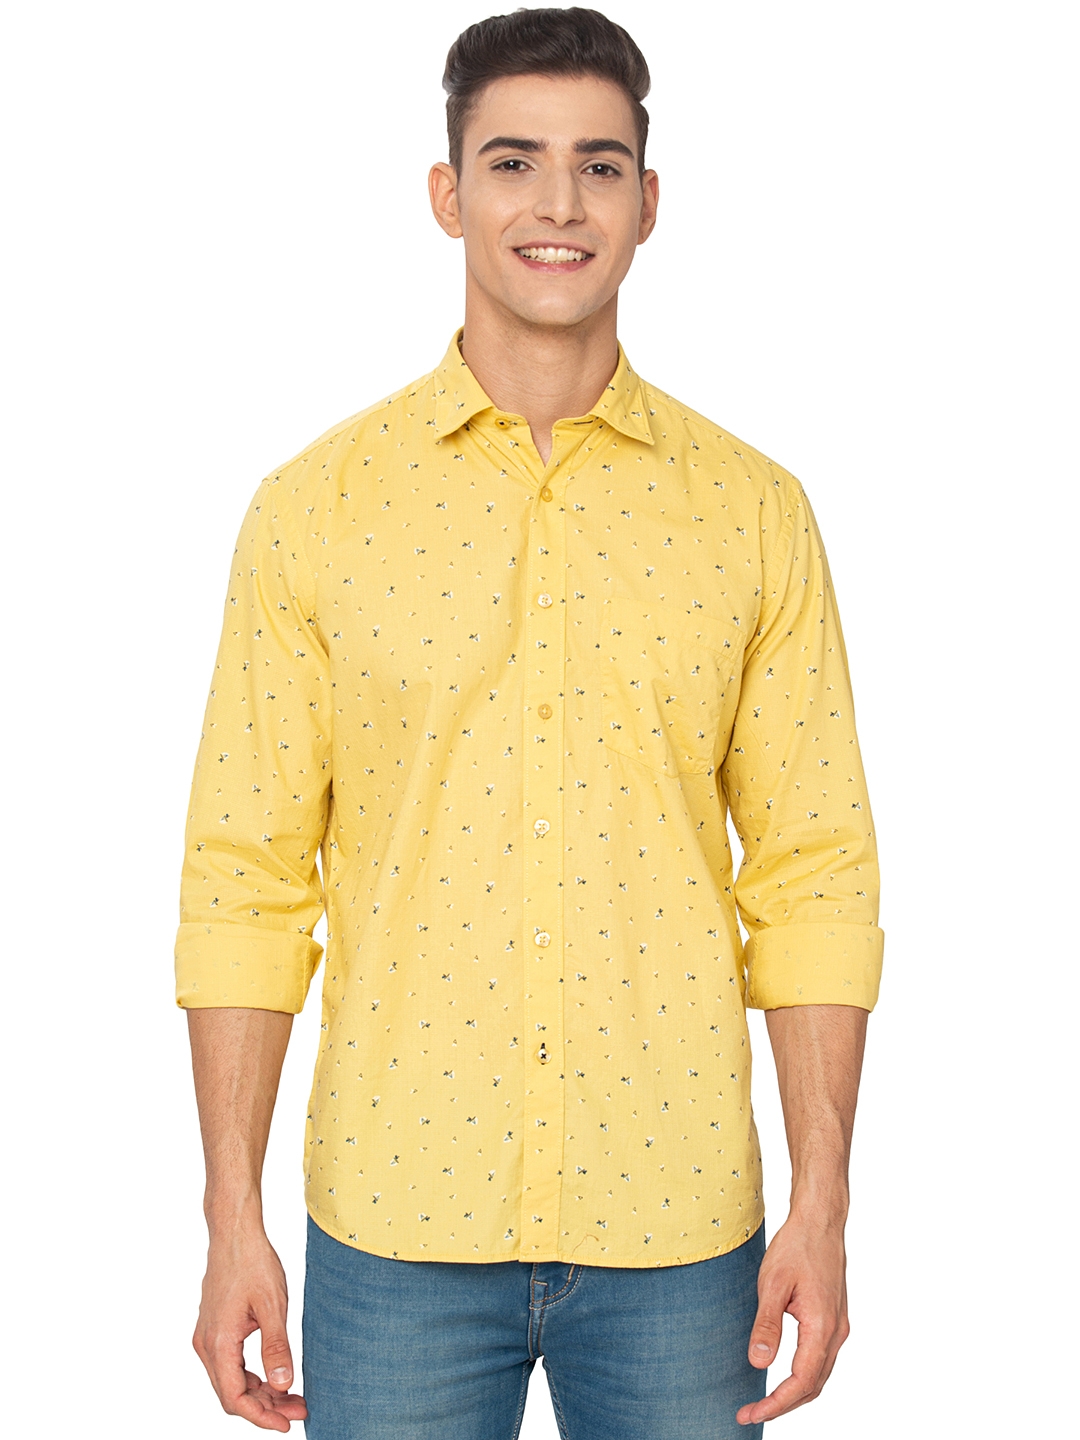 Greenfibre | Lemon Yellow Printed Slim Fit Casual Shirt | Greenfibre 0